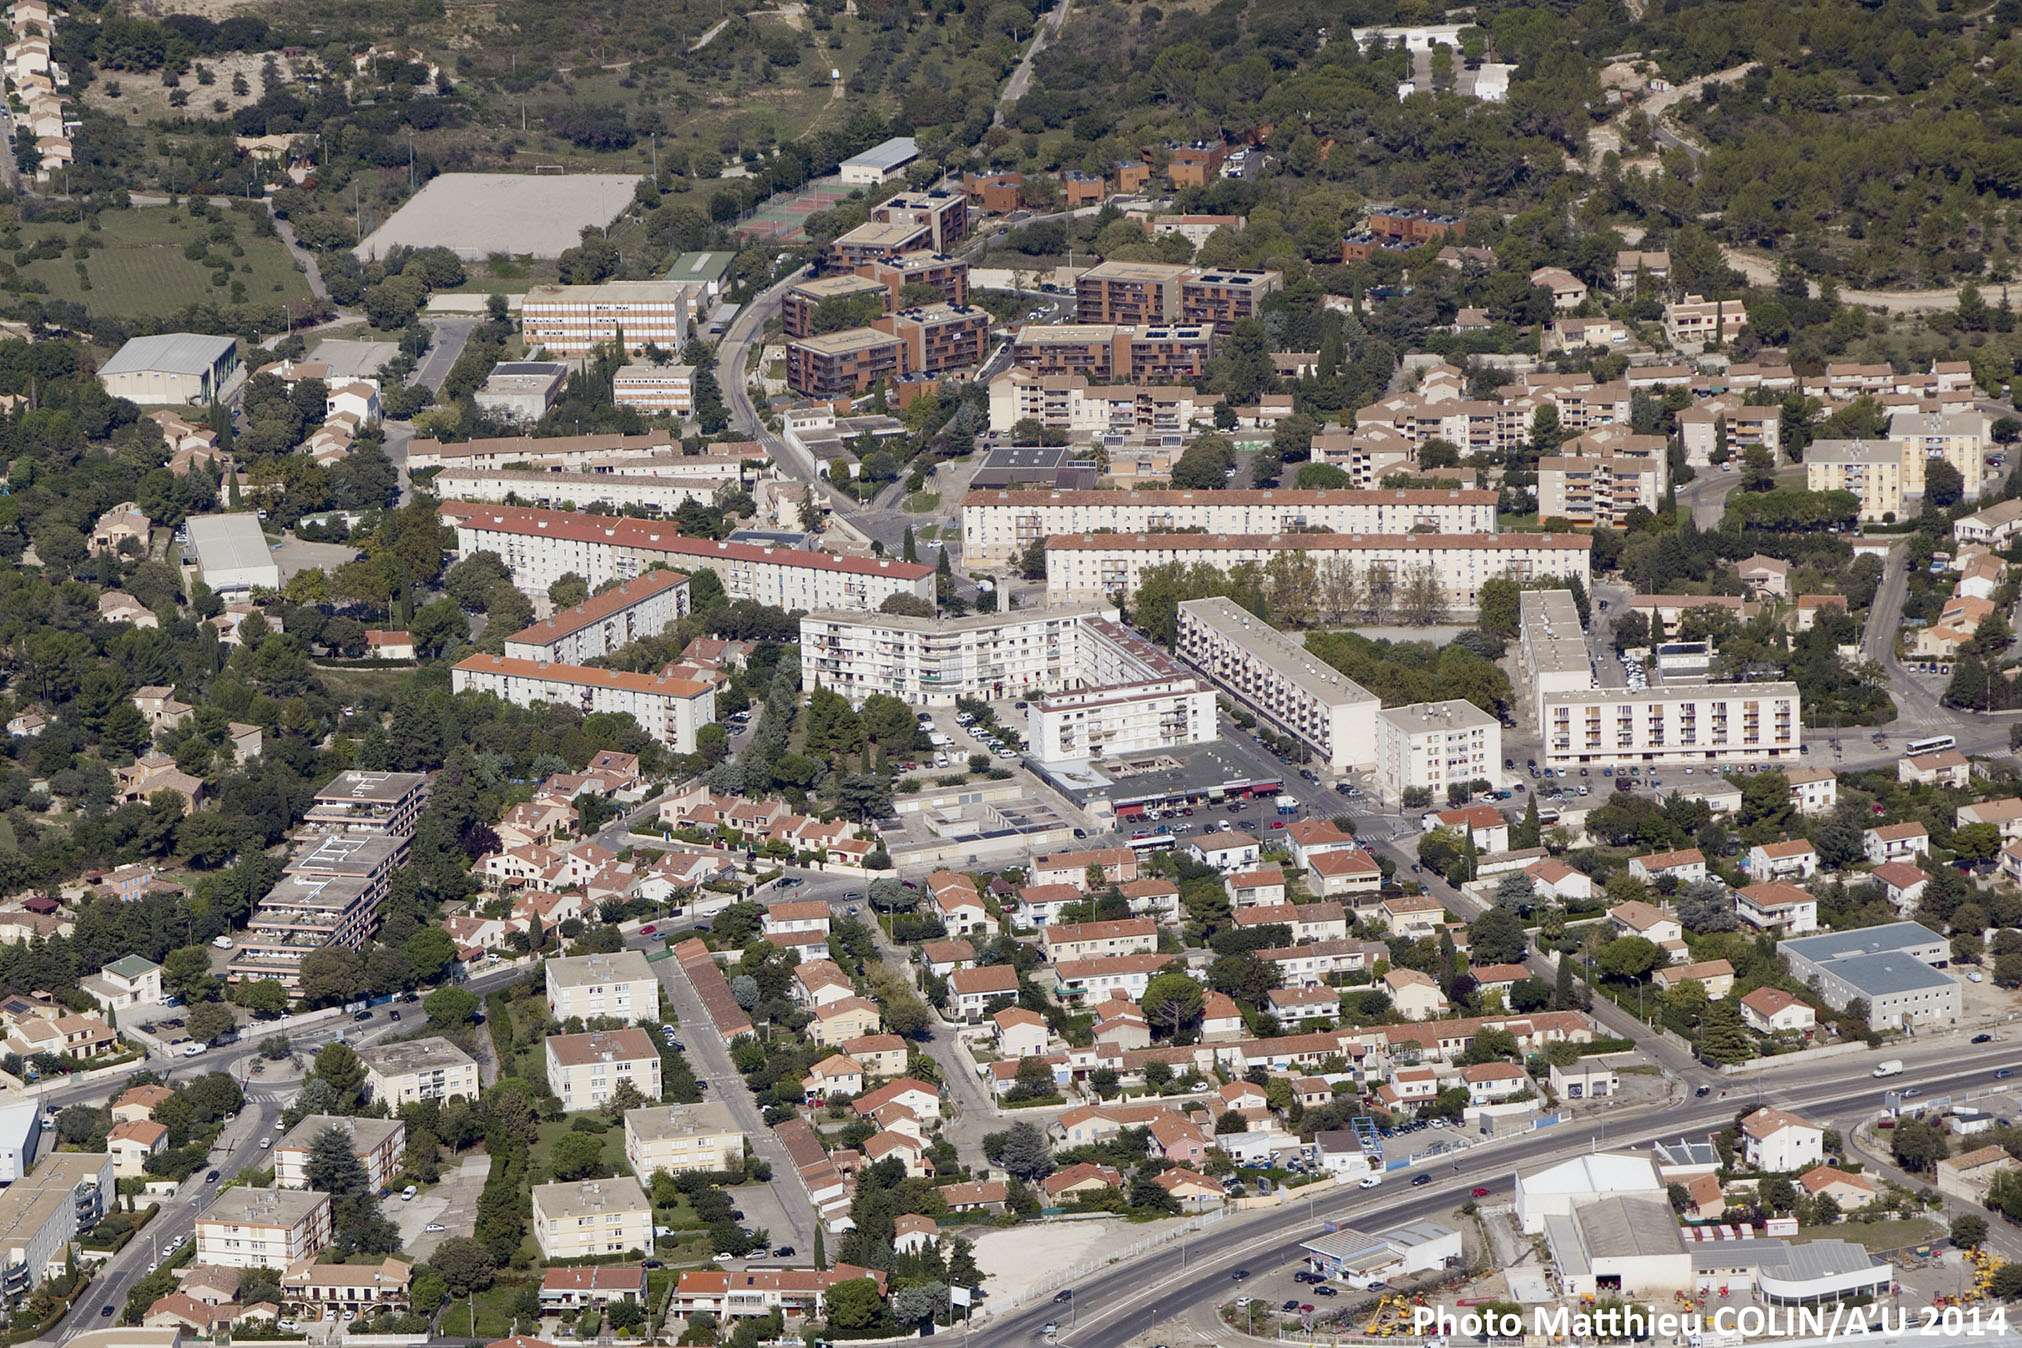   renouvellement urbain du quartier Mas de Mingue dans le cadre du 
Nouveau Programme National de Renouvellement Urbain (NPNRU) de la ville de Nîmes